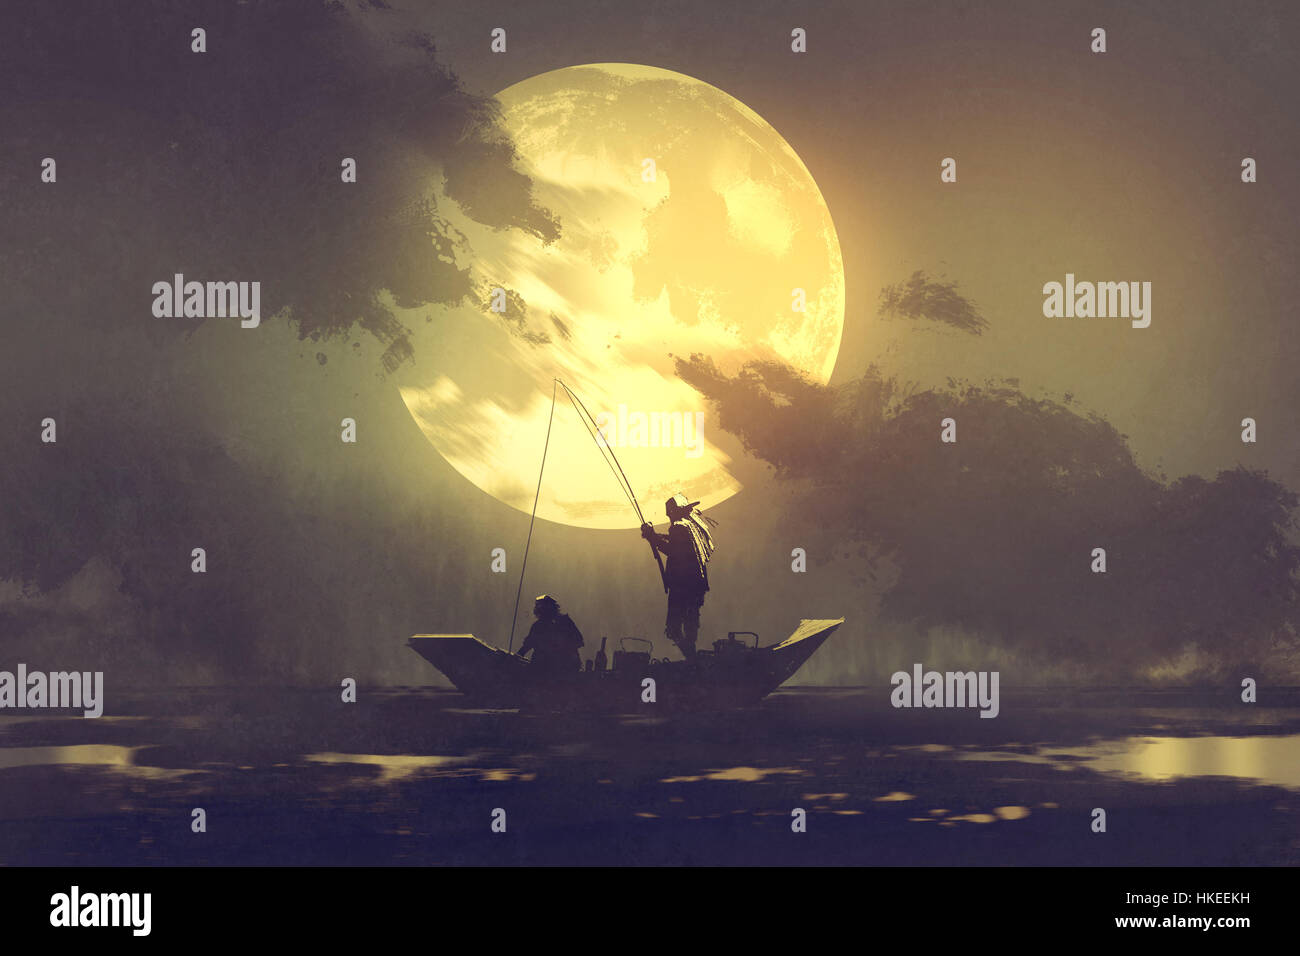 Silhouette di pescatori con canna da pesca sulla barca e grande luna sullo sfondo, illustrazione pittura Foto Stock